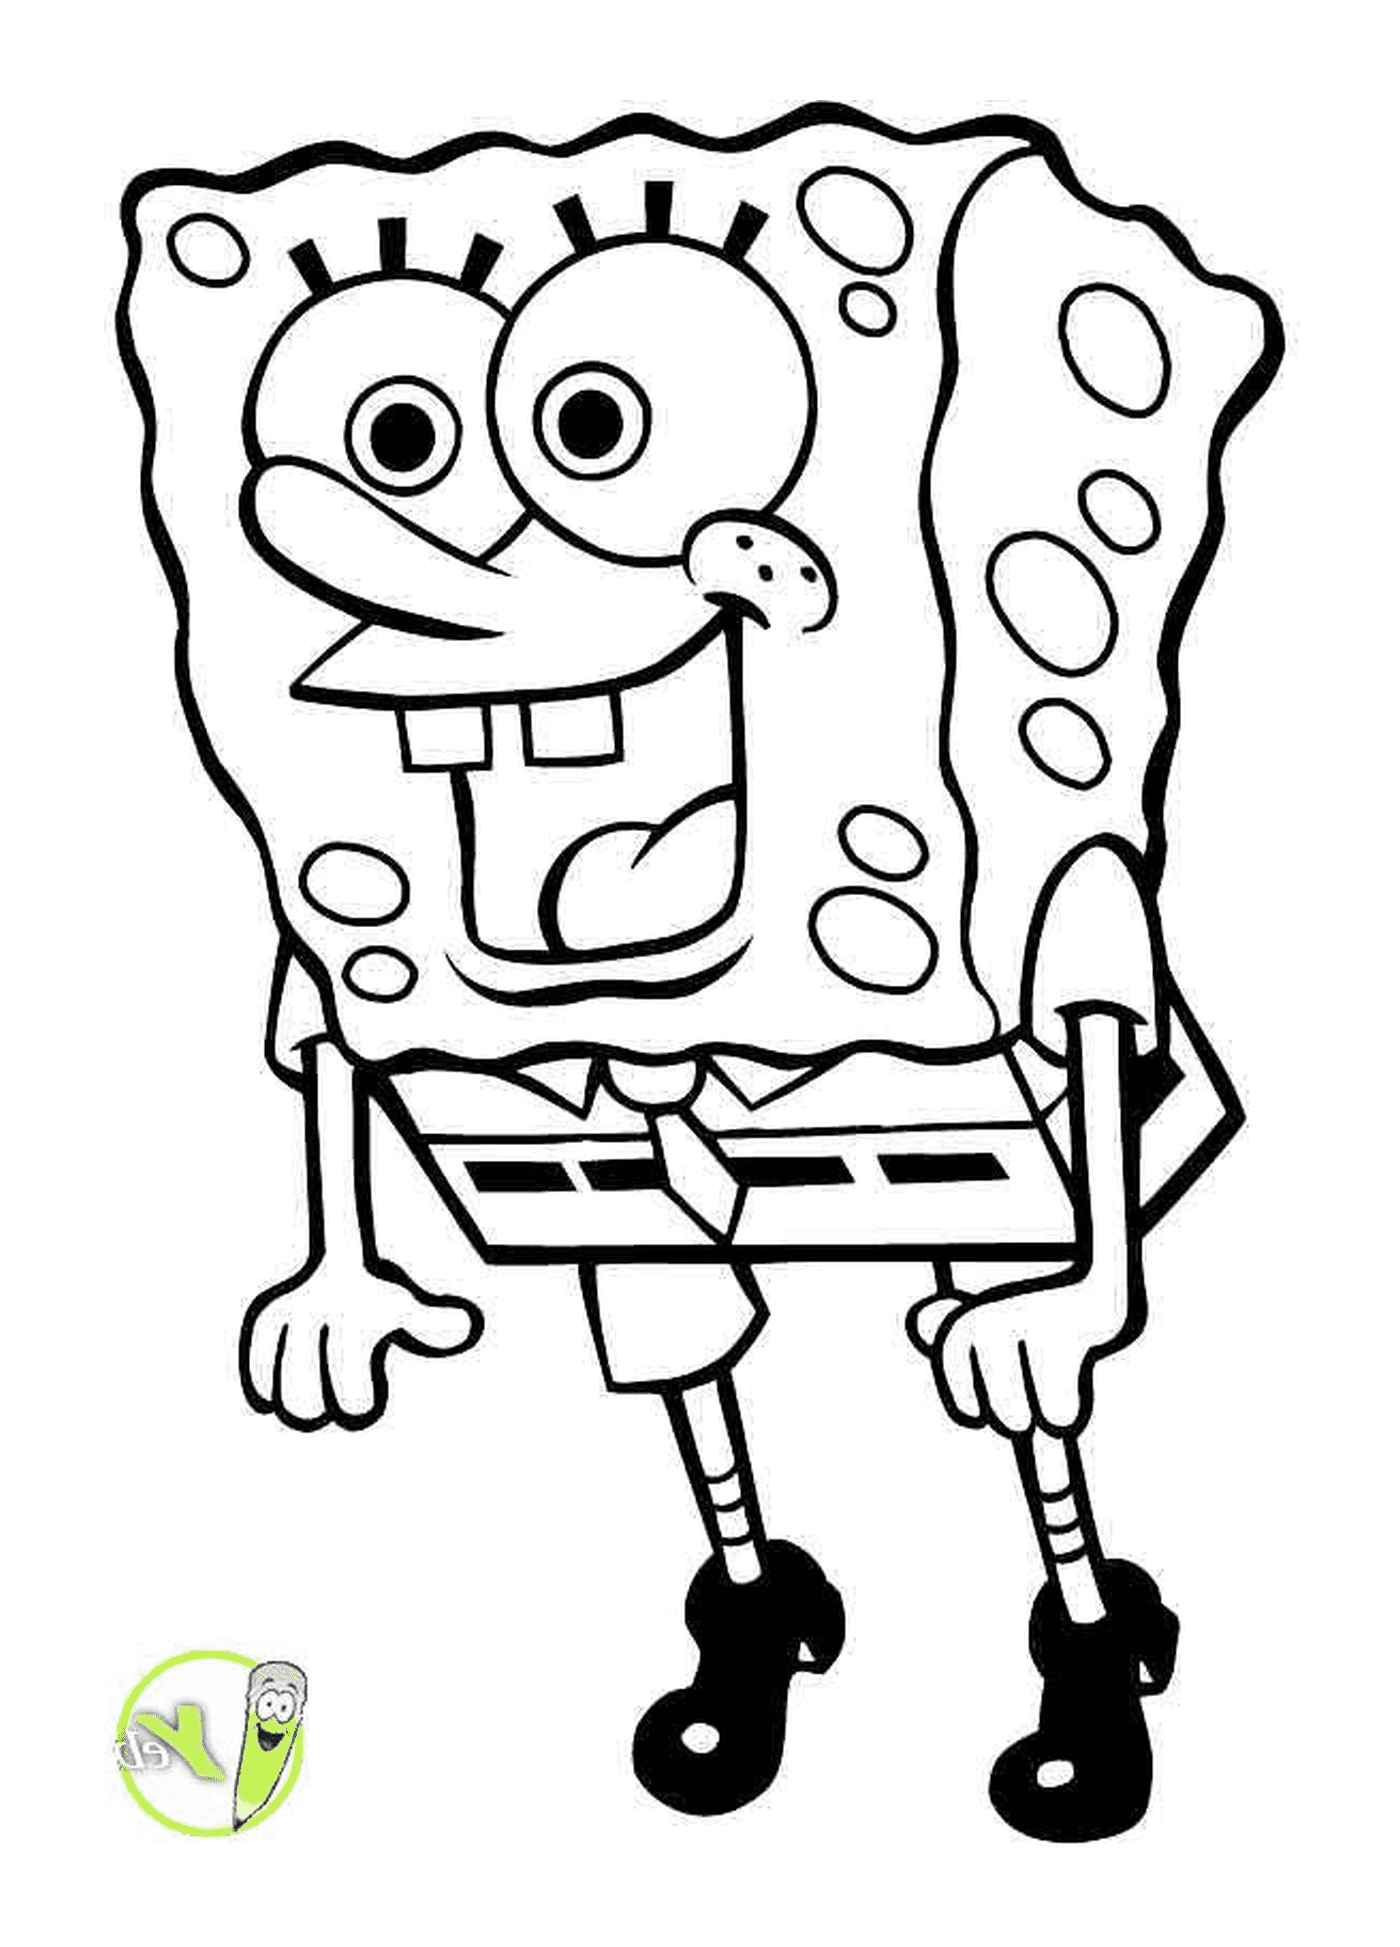  Ein Charakter von SpongeBob 